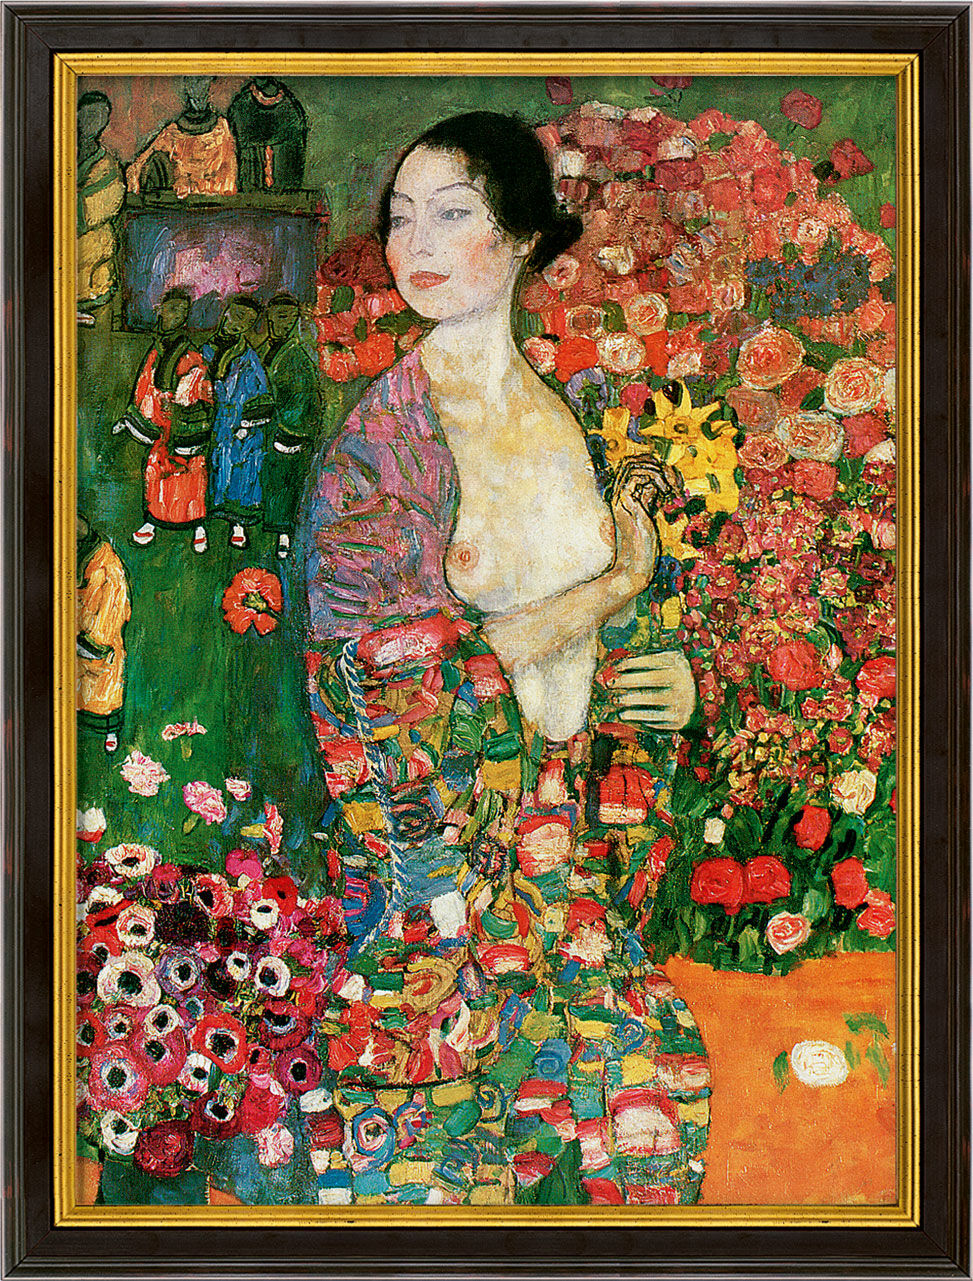 Tableau "La danseuse" (1916-18), encadré von Gustav Klimt